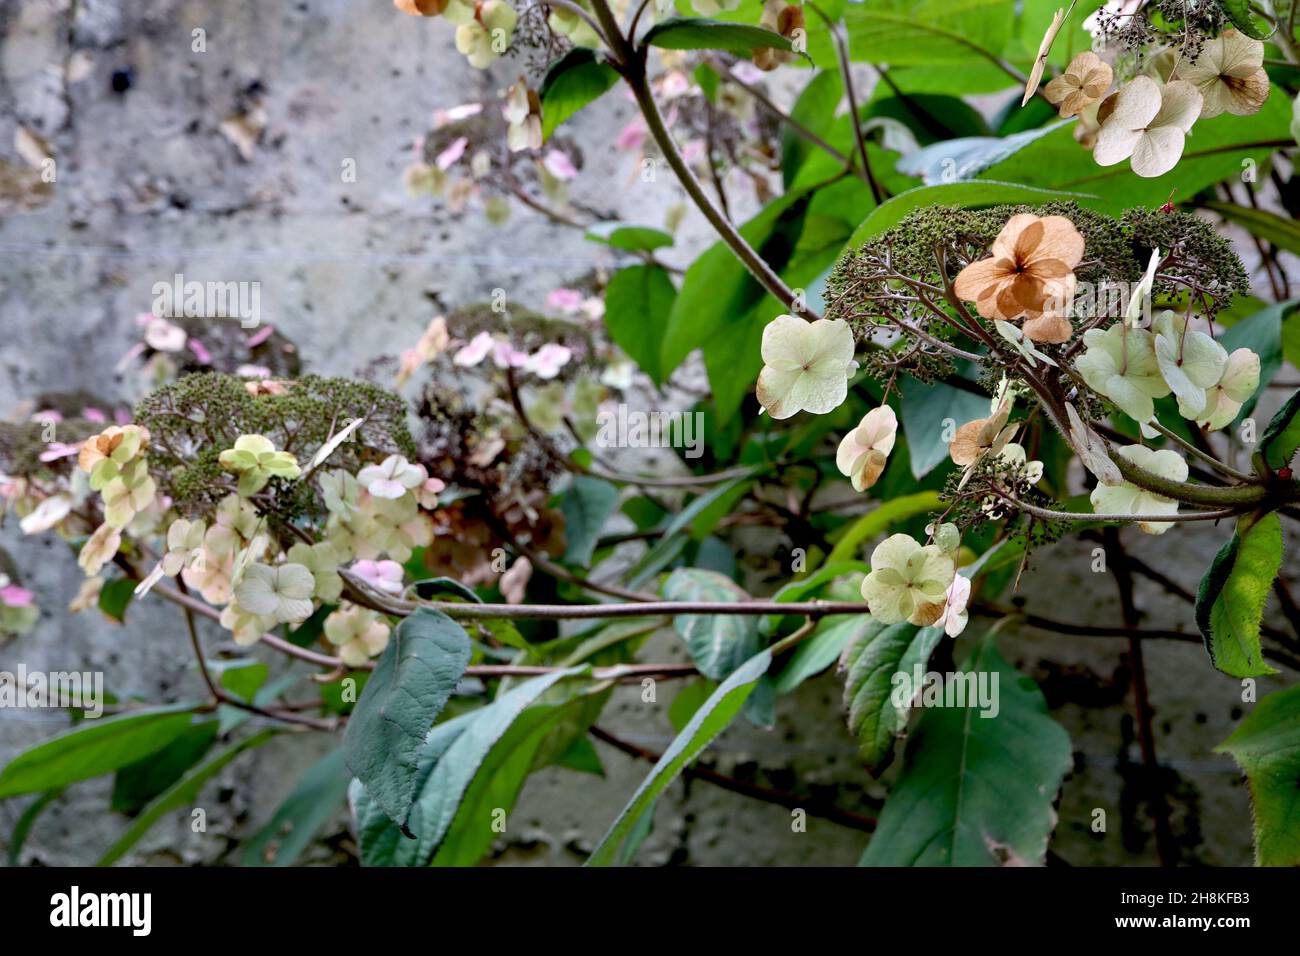 Hydrangea aspera subsp aspera villosa Group hydrangea a foglie ruvide – petali secchi e boccioli di fiori, foglie di ovato verde scuro larghe, novembre, Inghilterra, Regno Unito Foto Stock